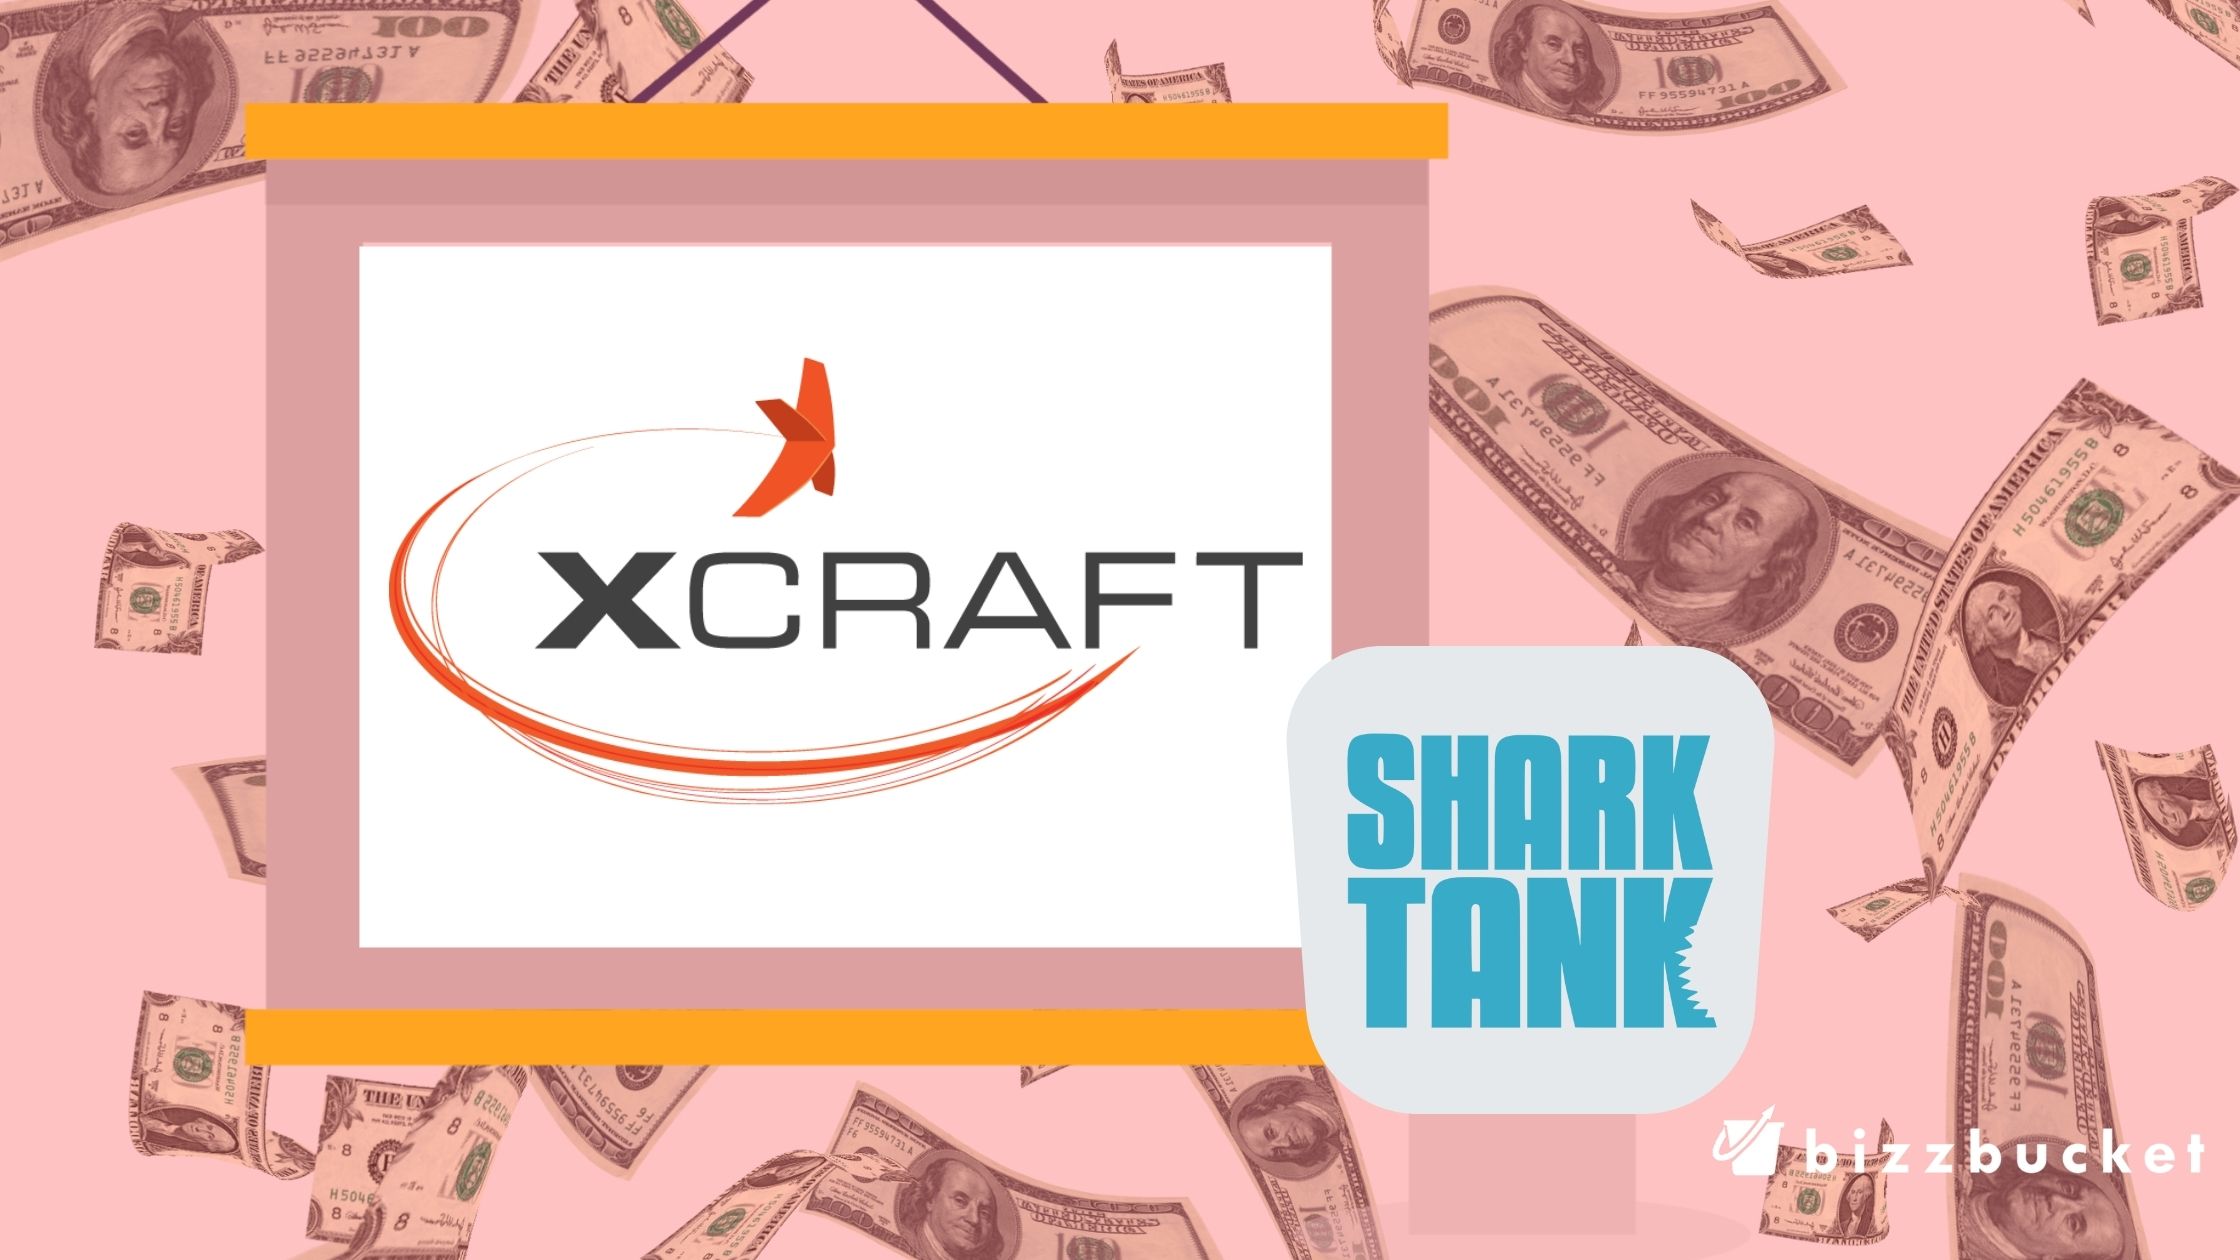 Xcraft shark tank update